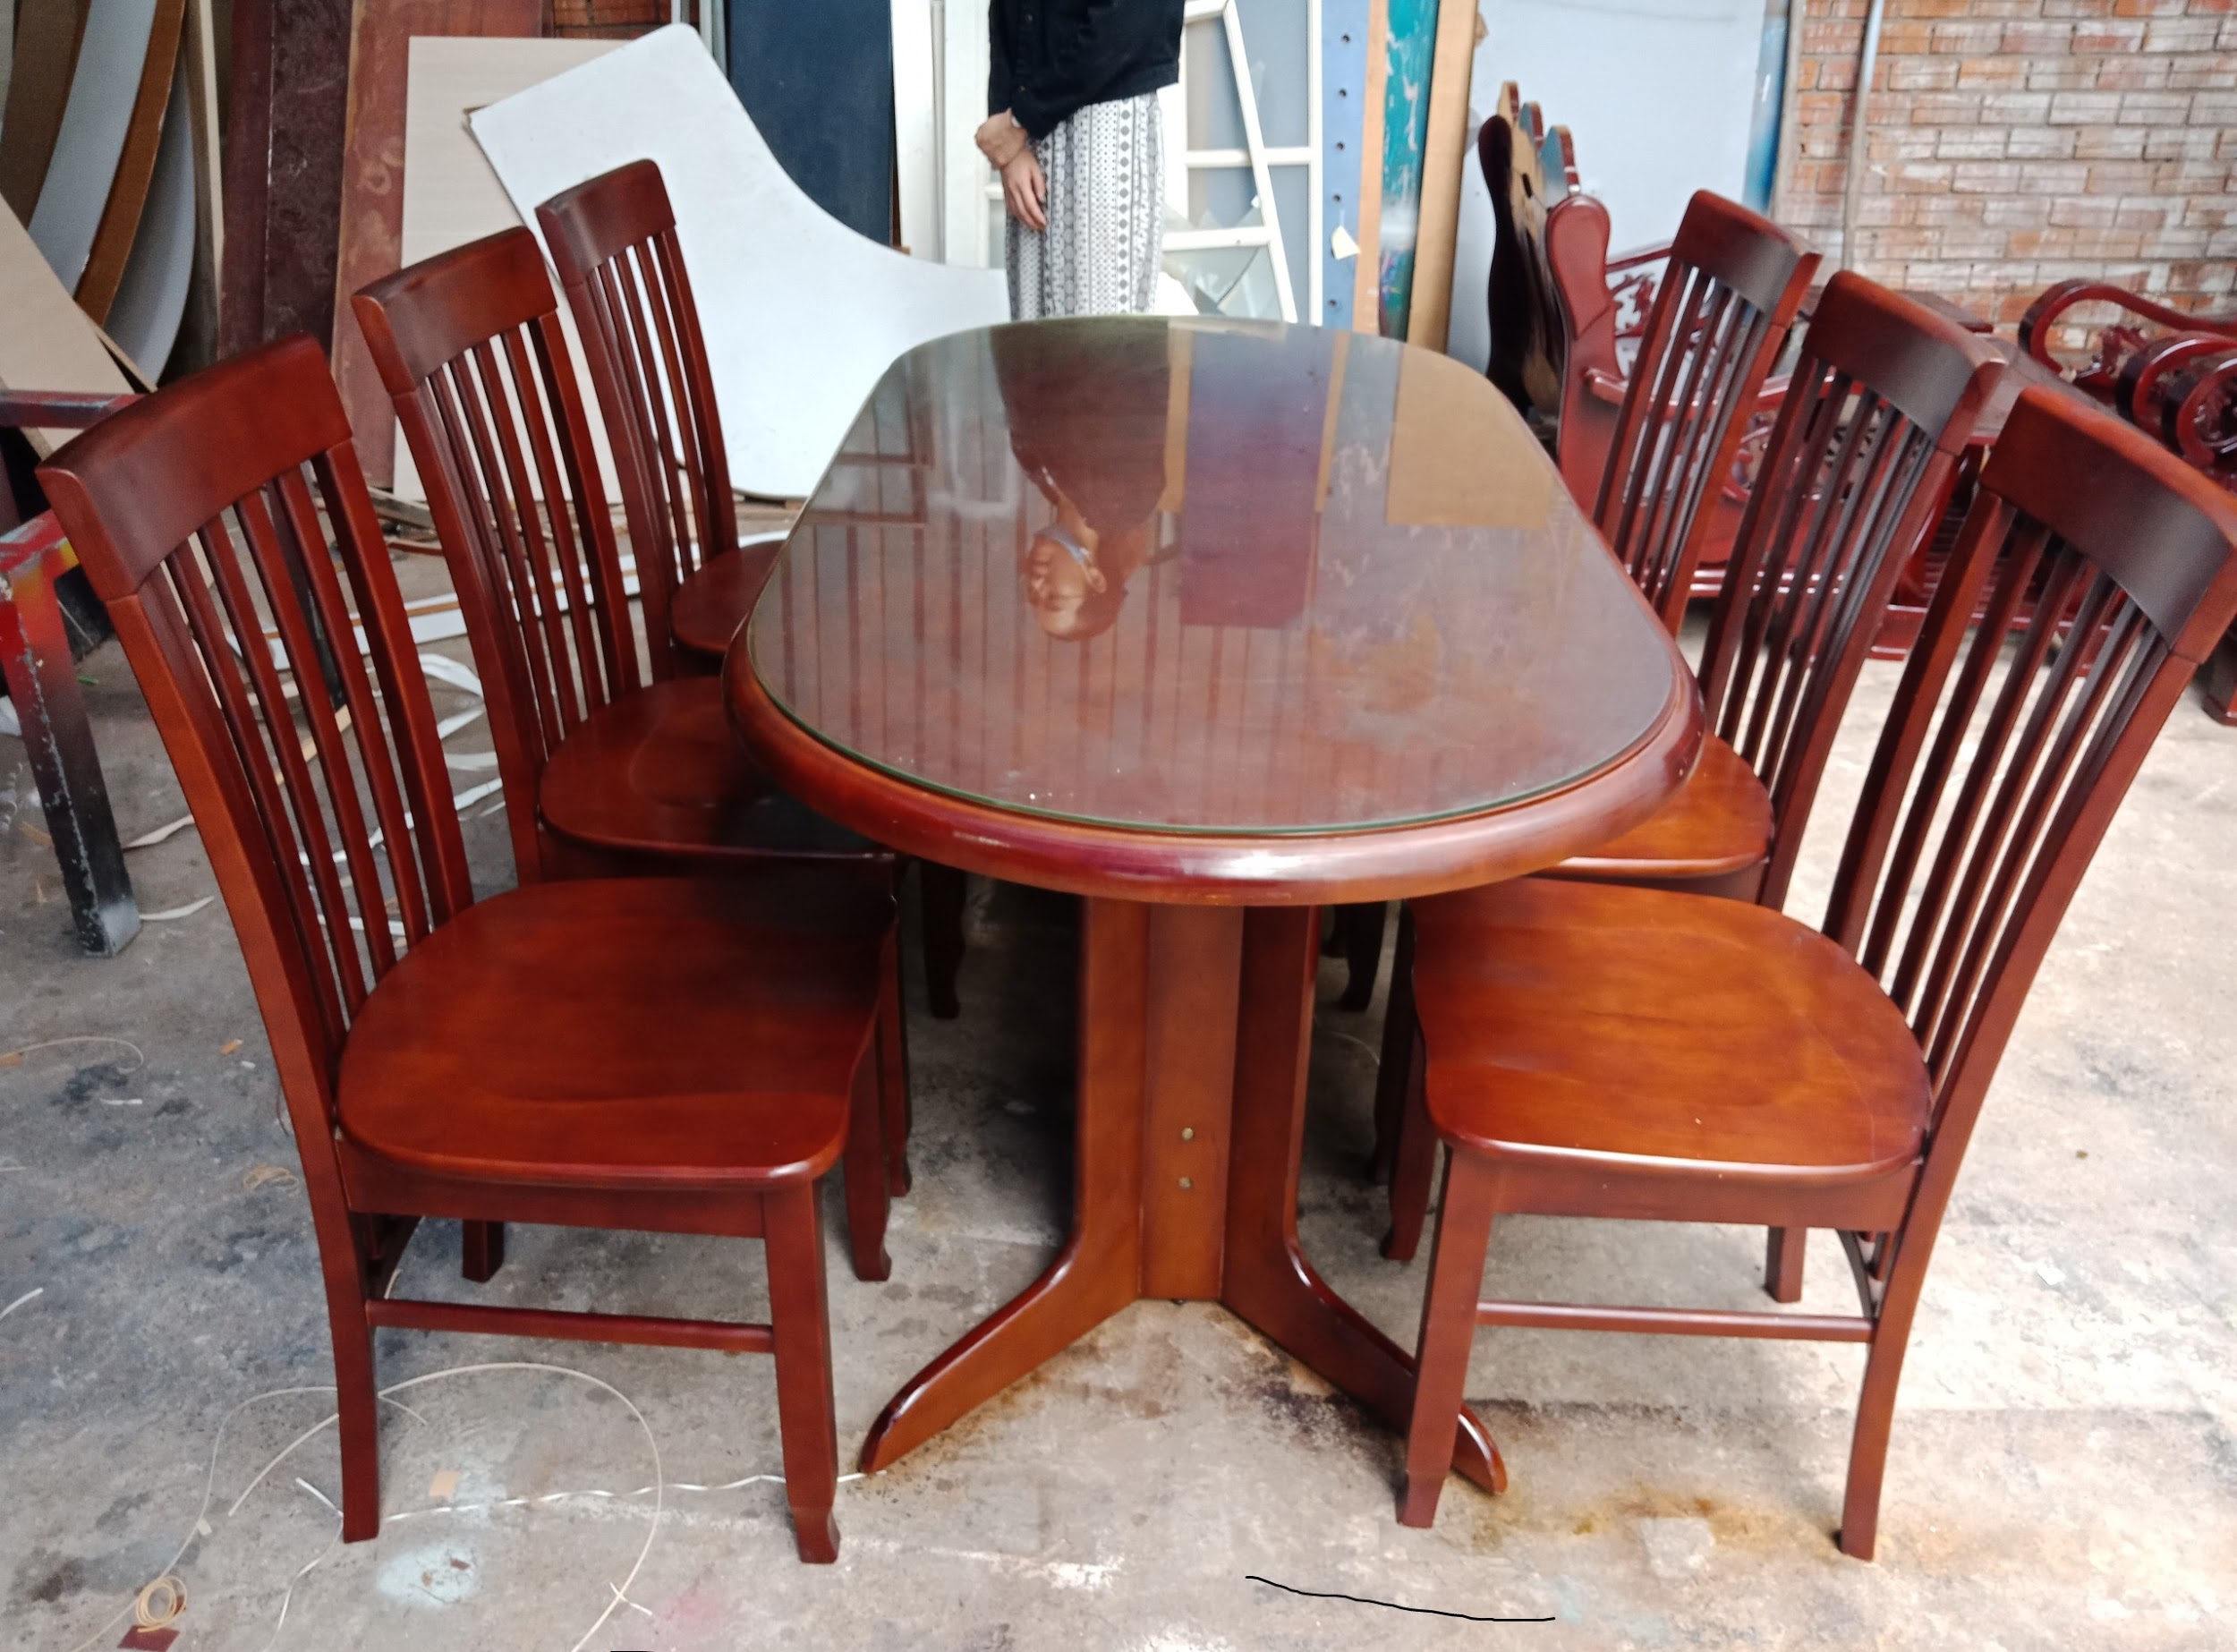 mua bàn ghế gỗ cũ giá rẻ tphcm